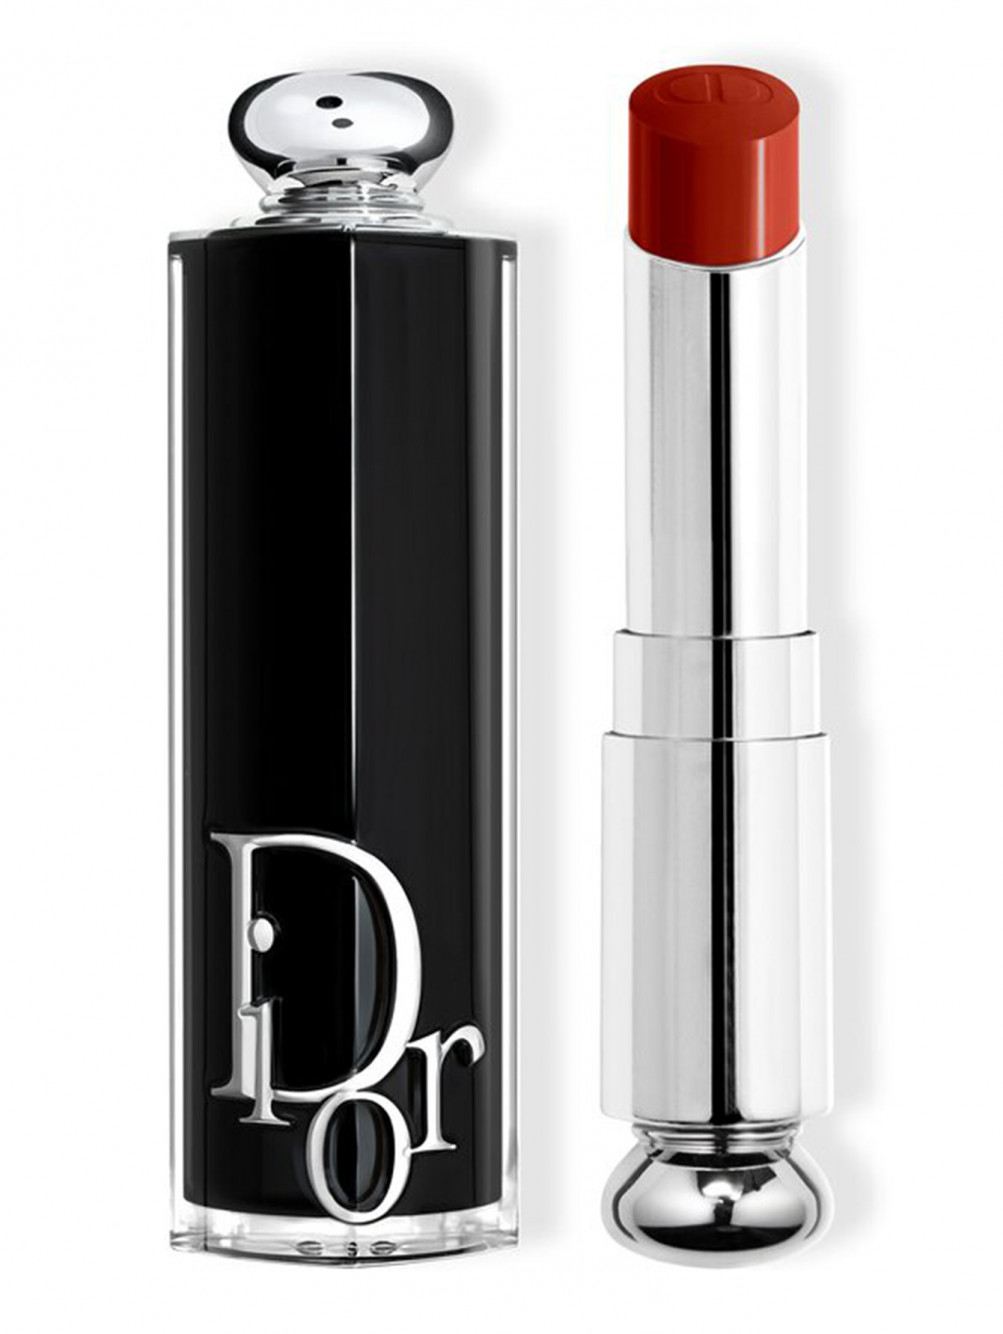 Помада для губ Dior Addict, 822 Алый Шелк, 3,2 г - Общий вид